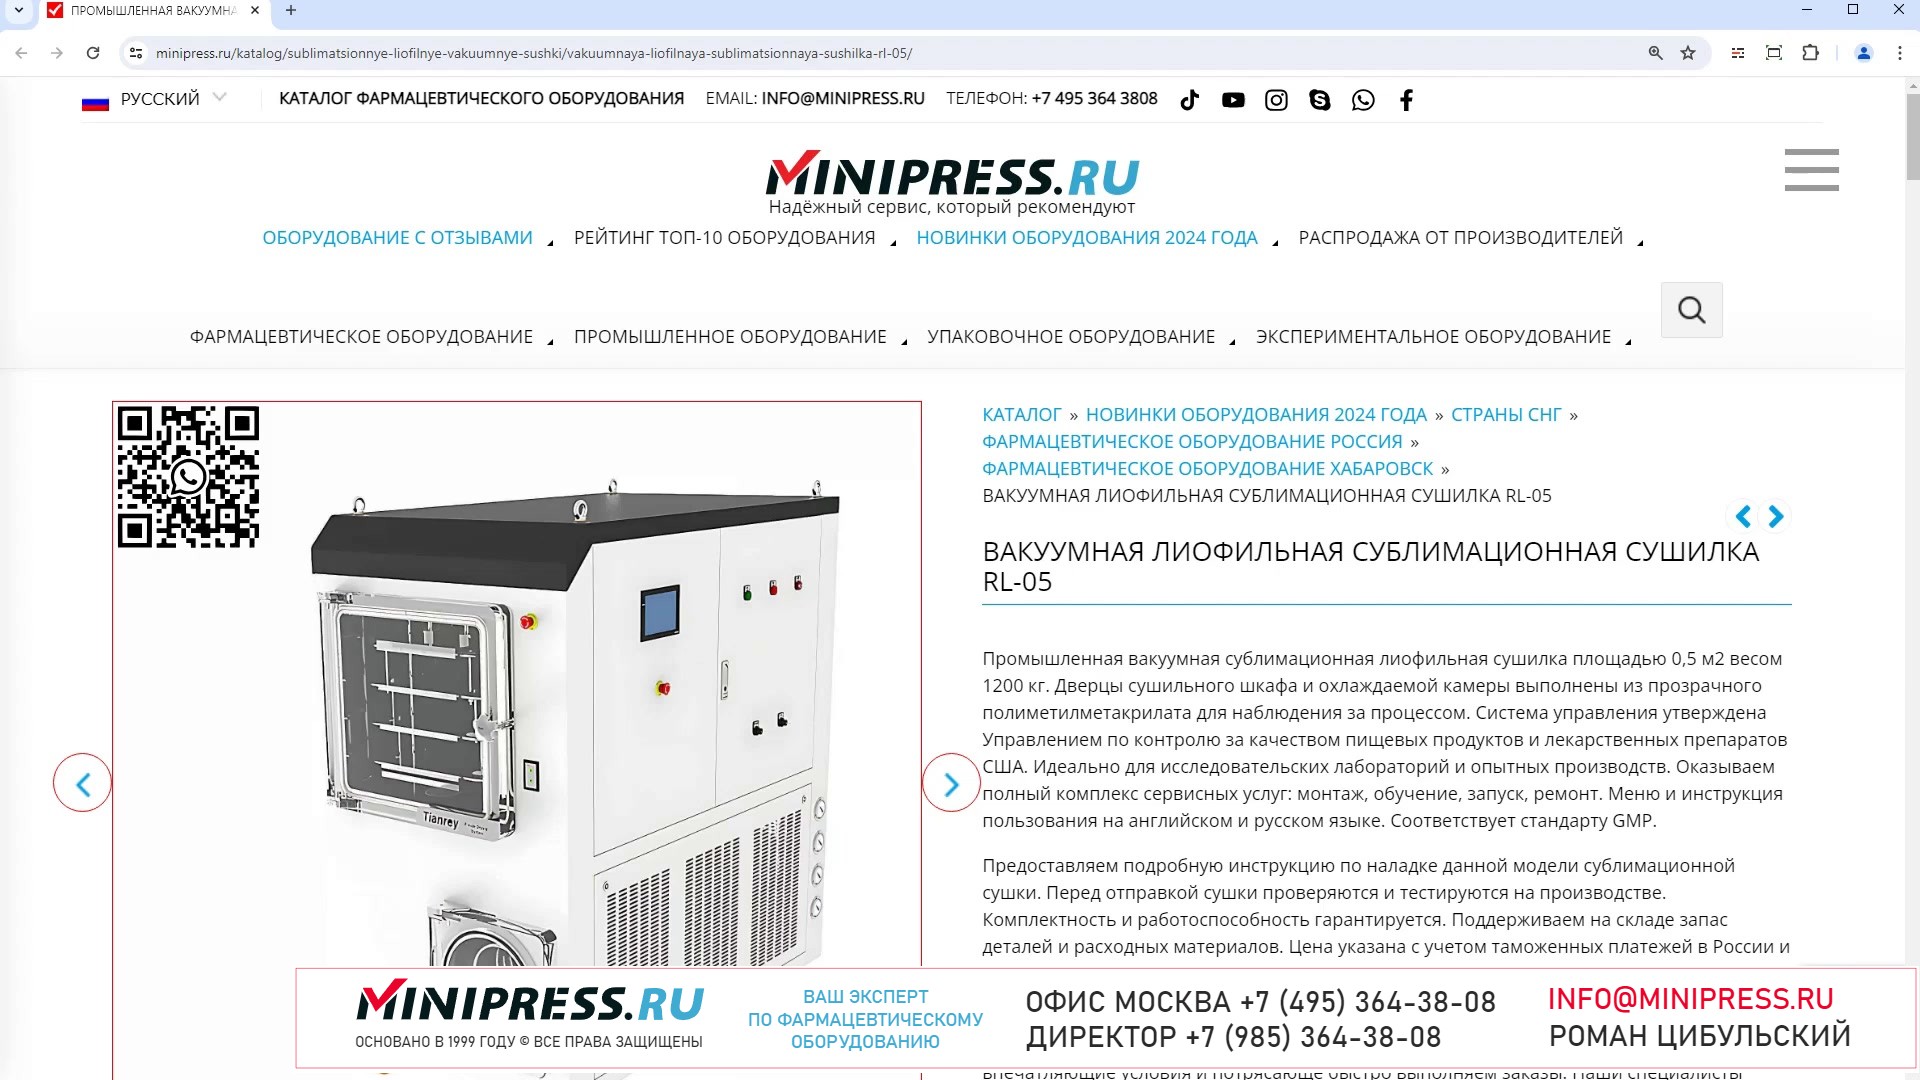 Minipress.ru Вакуумная лиофильная сублимационная сушилка RL-05